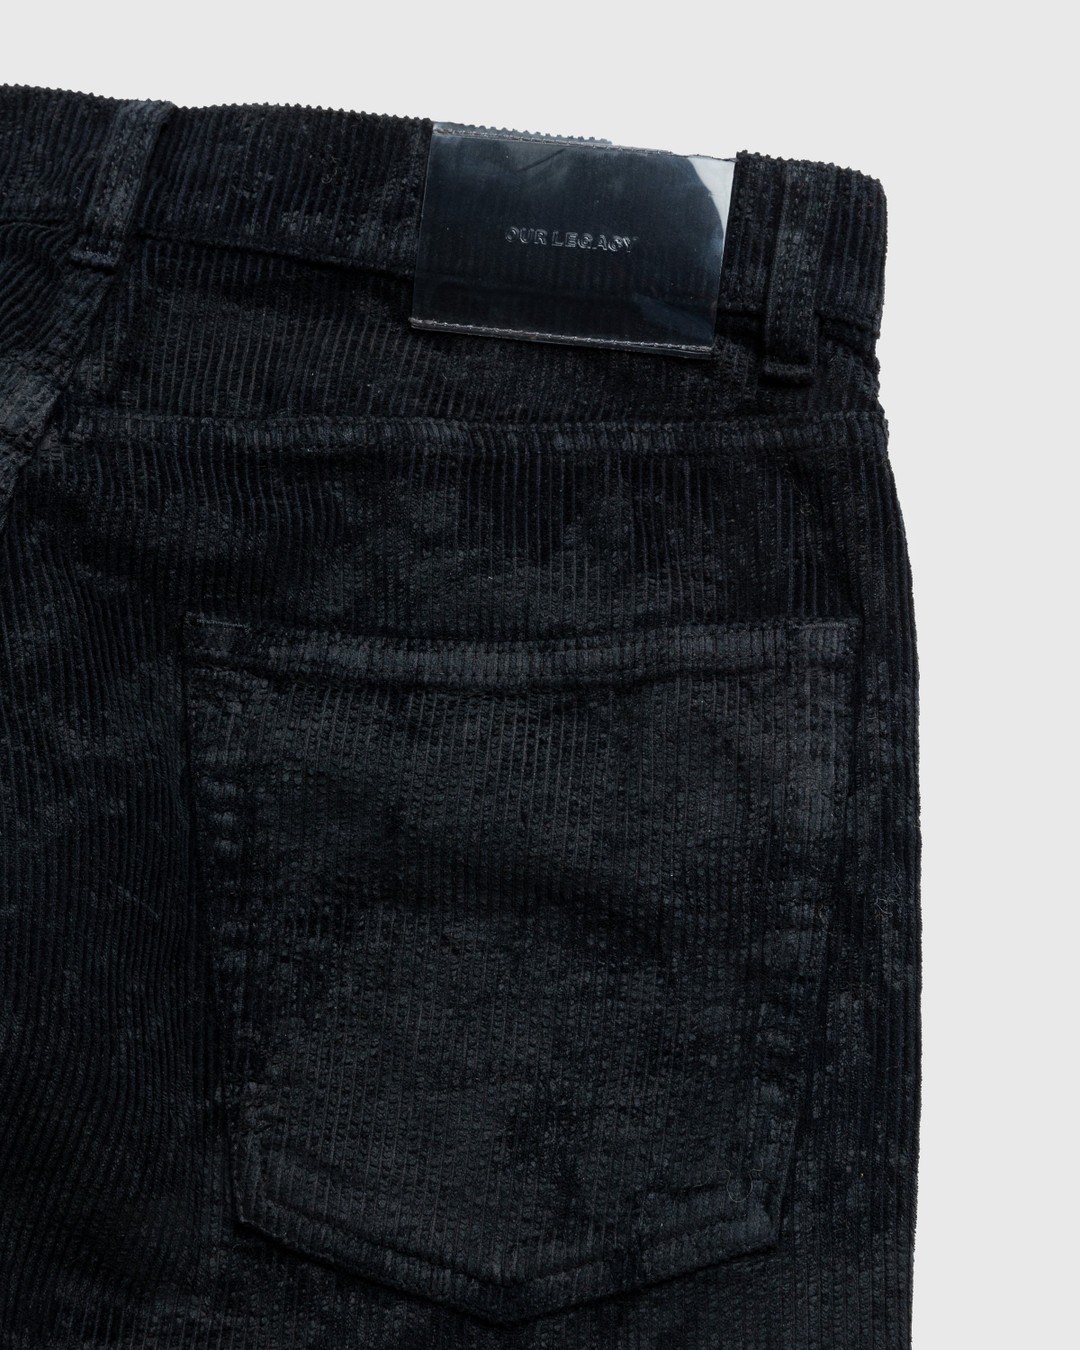 Our Legacy – Vast Cut Corduroy Jeans Black - Pants - Black - Image 4